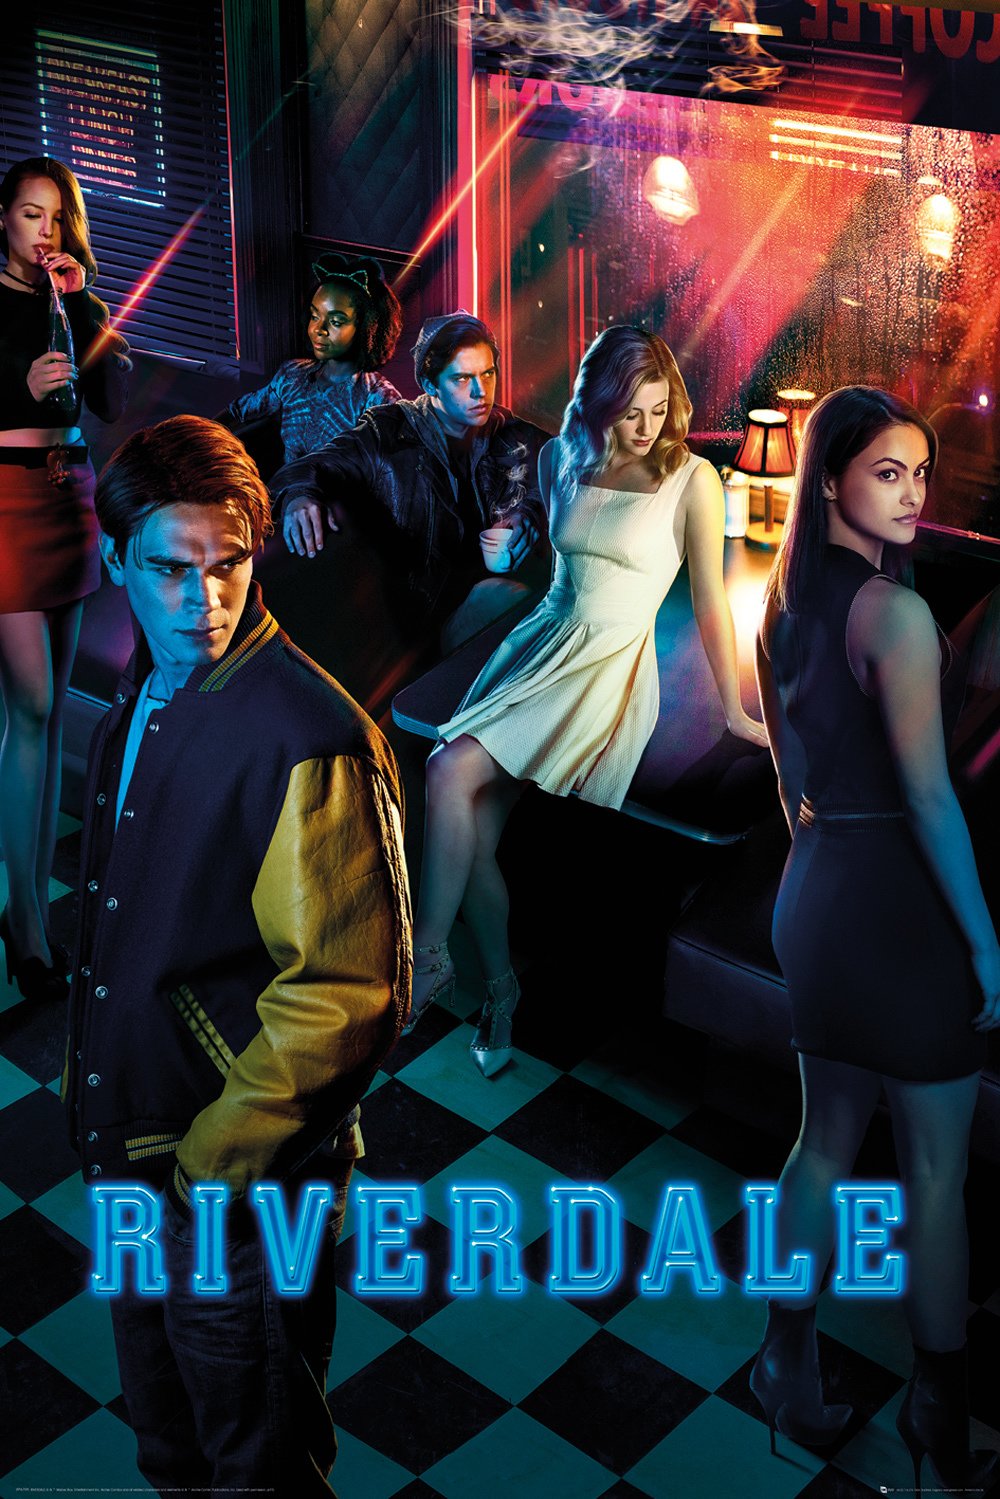 Riverdale Season 1 Poster - egoamo.co.za